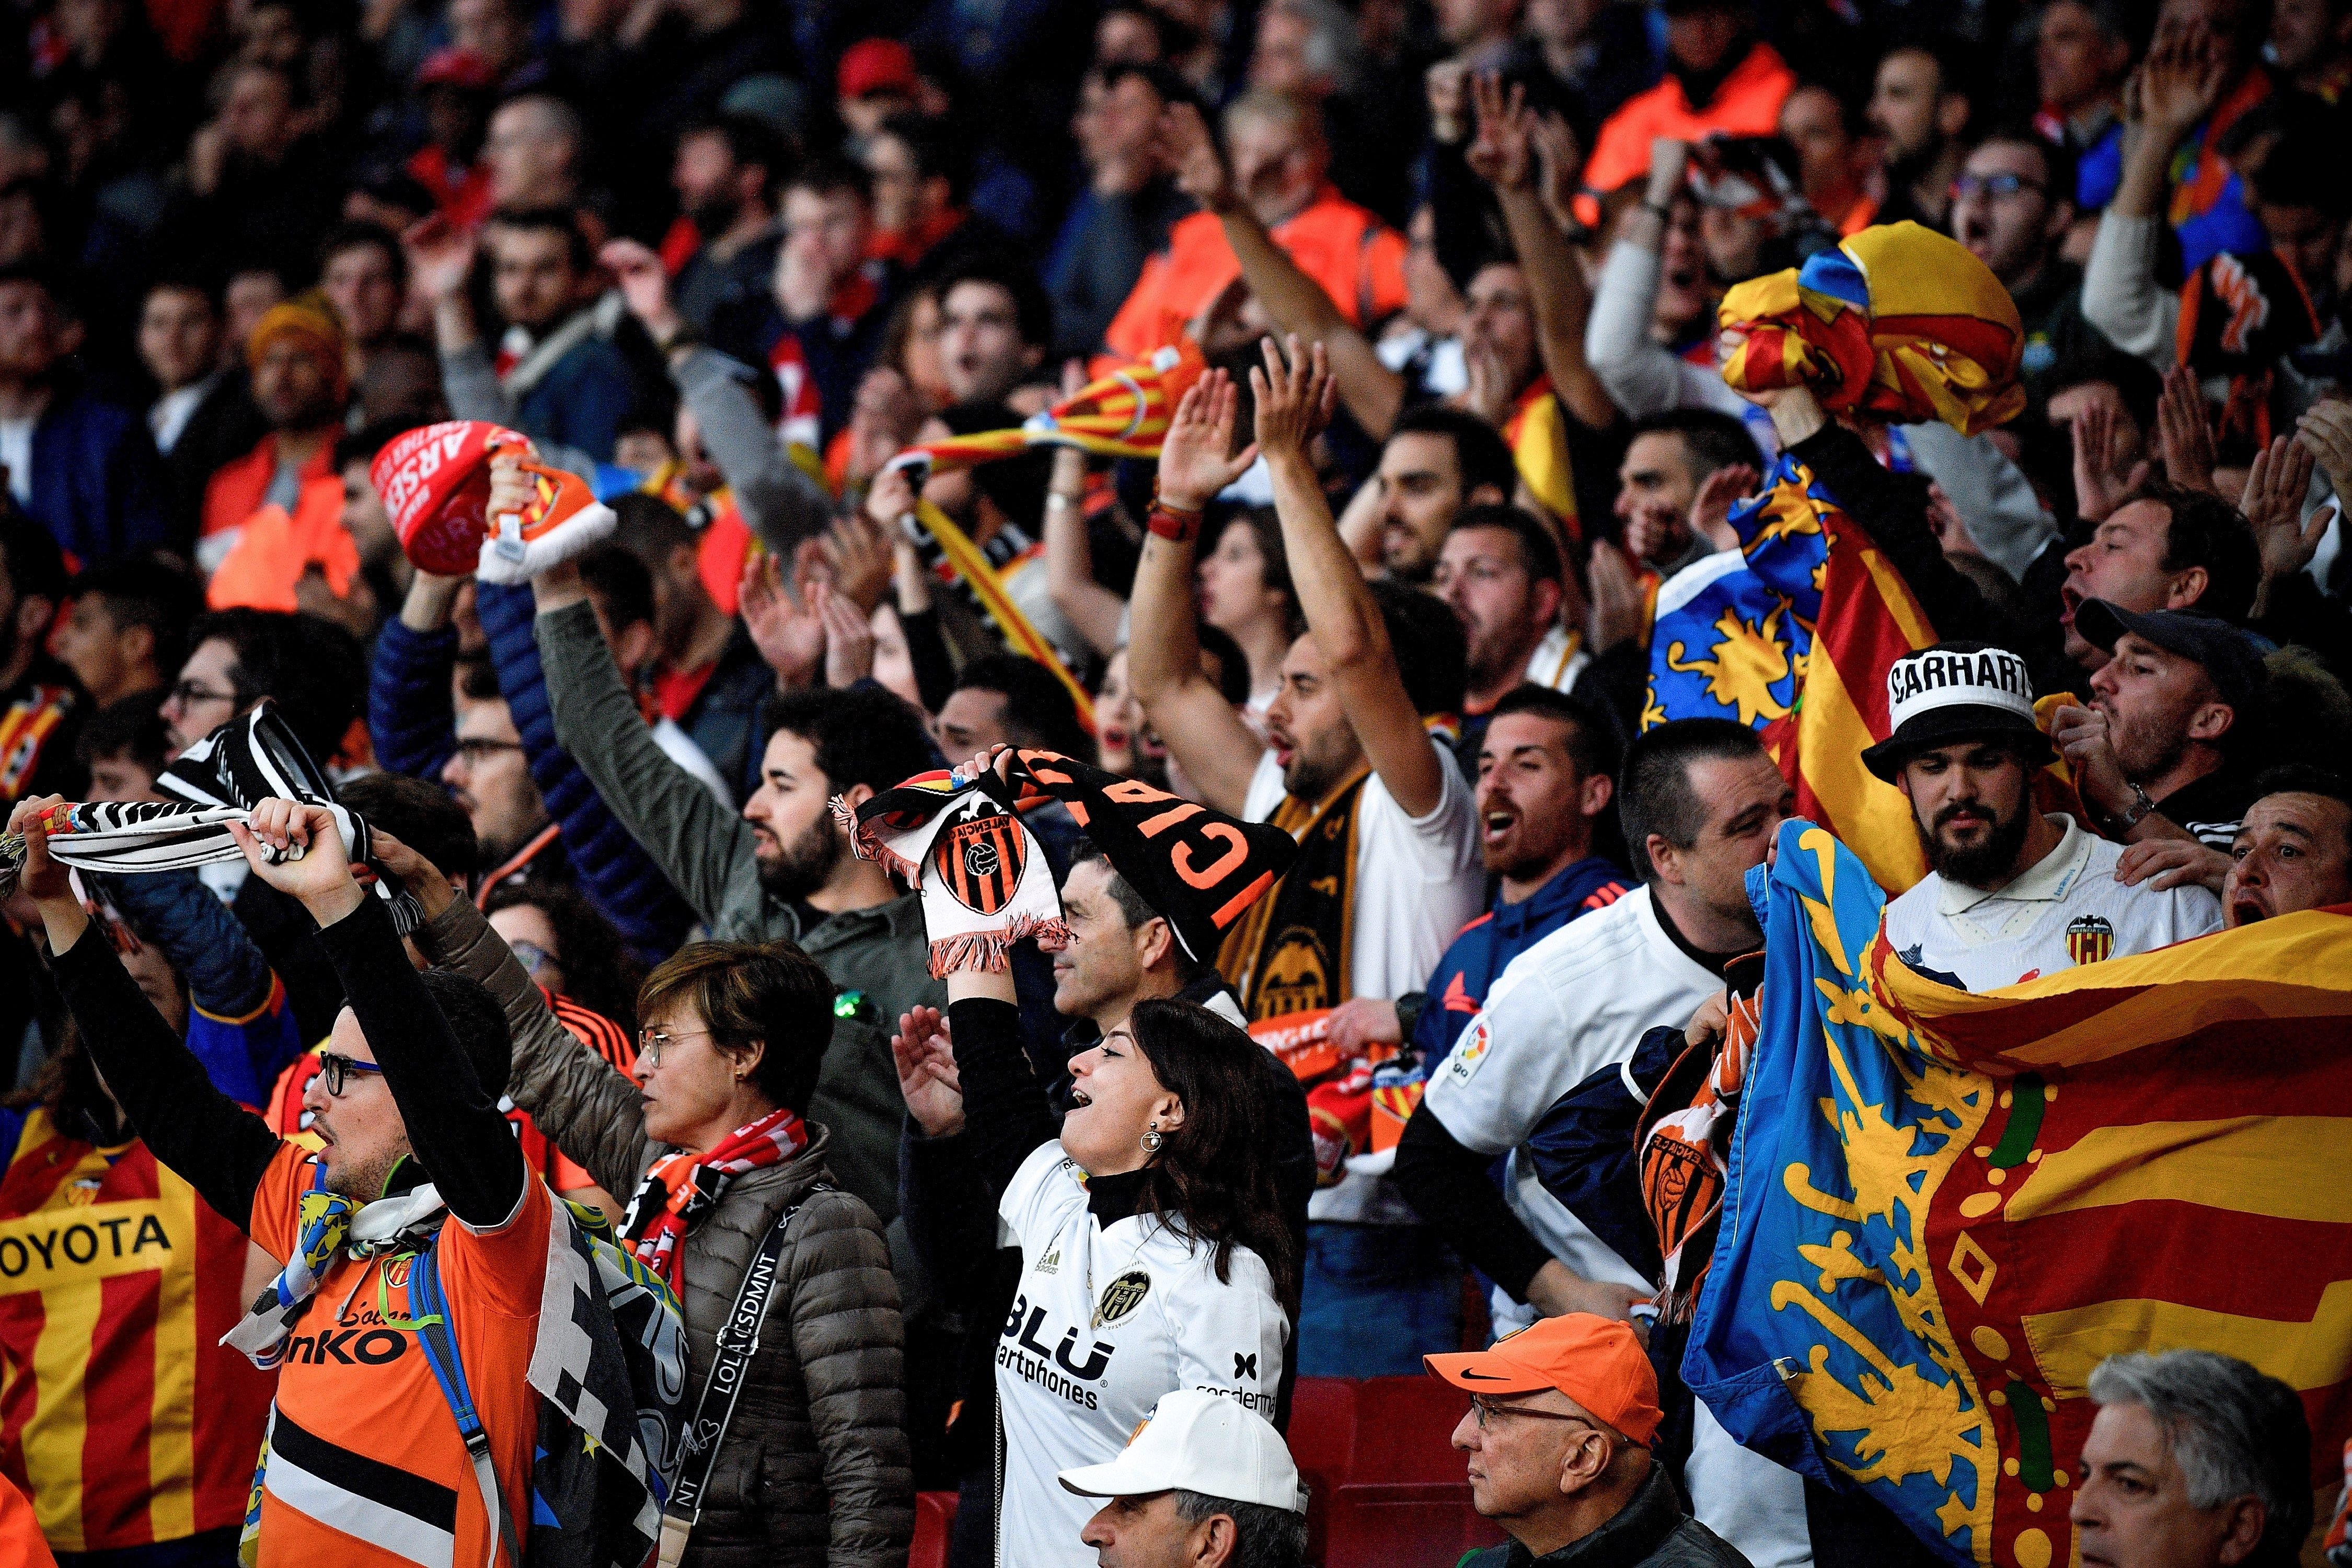 Seguidores del Valencia hacen gestos nazis y racistas a la afición del Arsenal